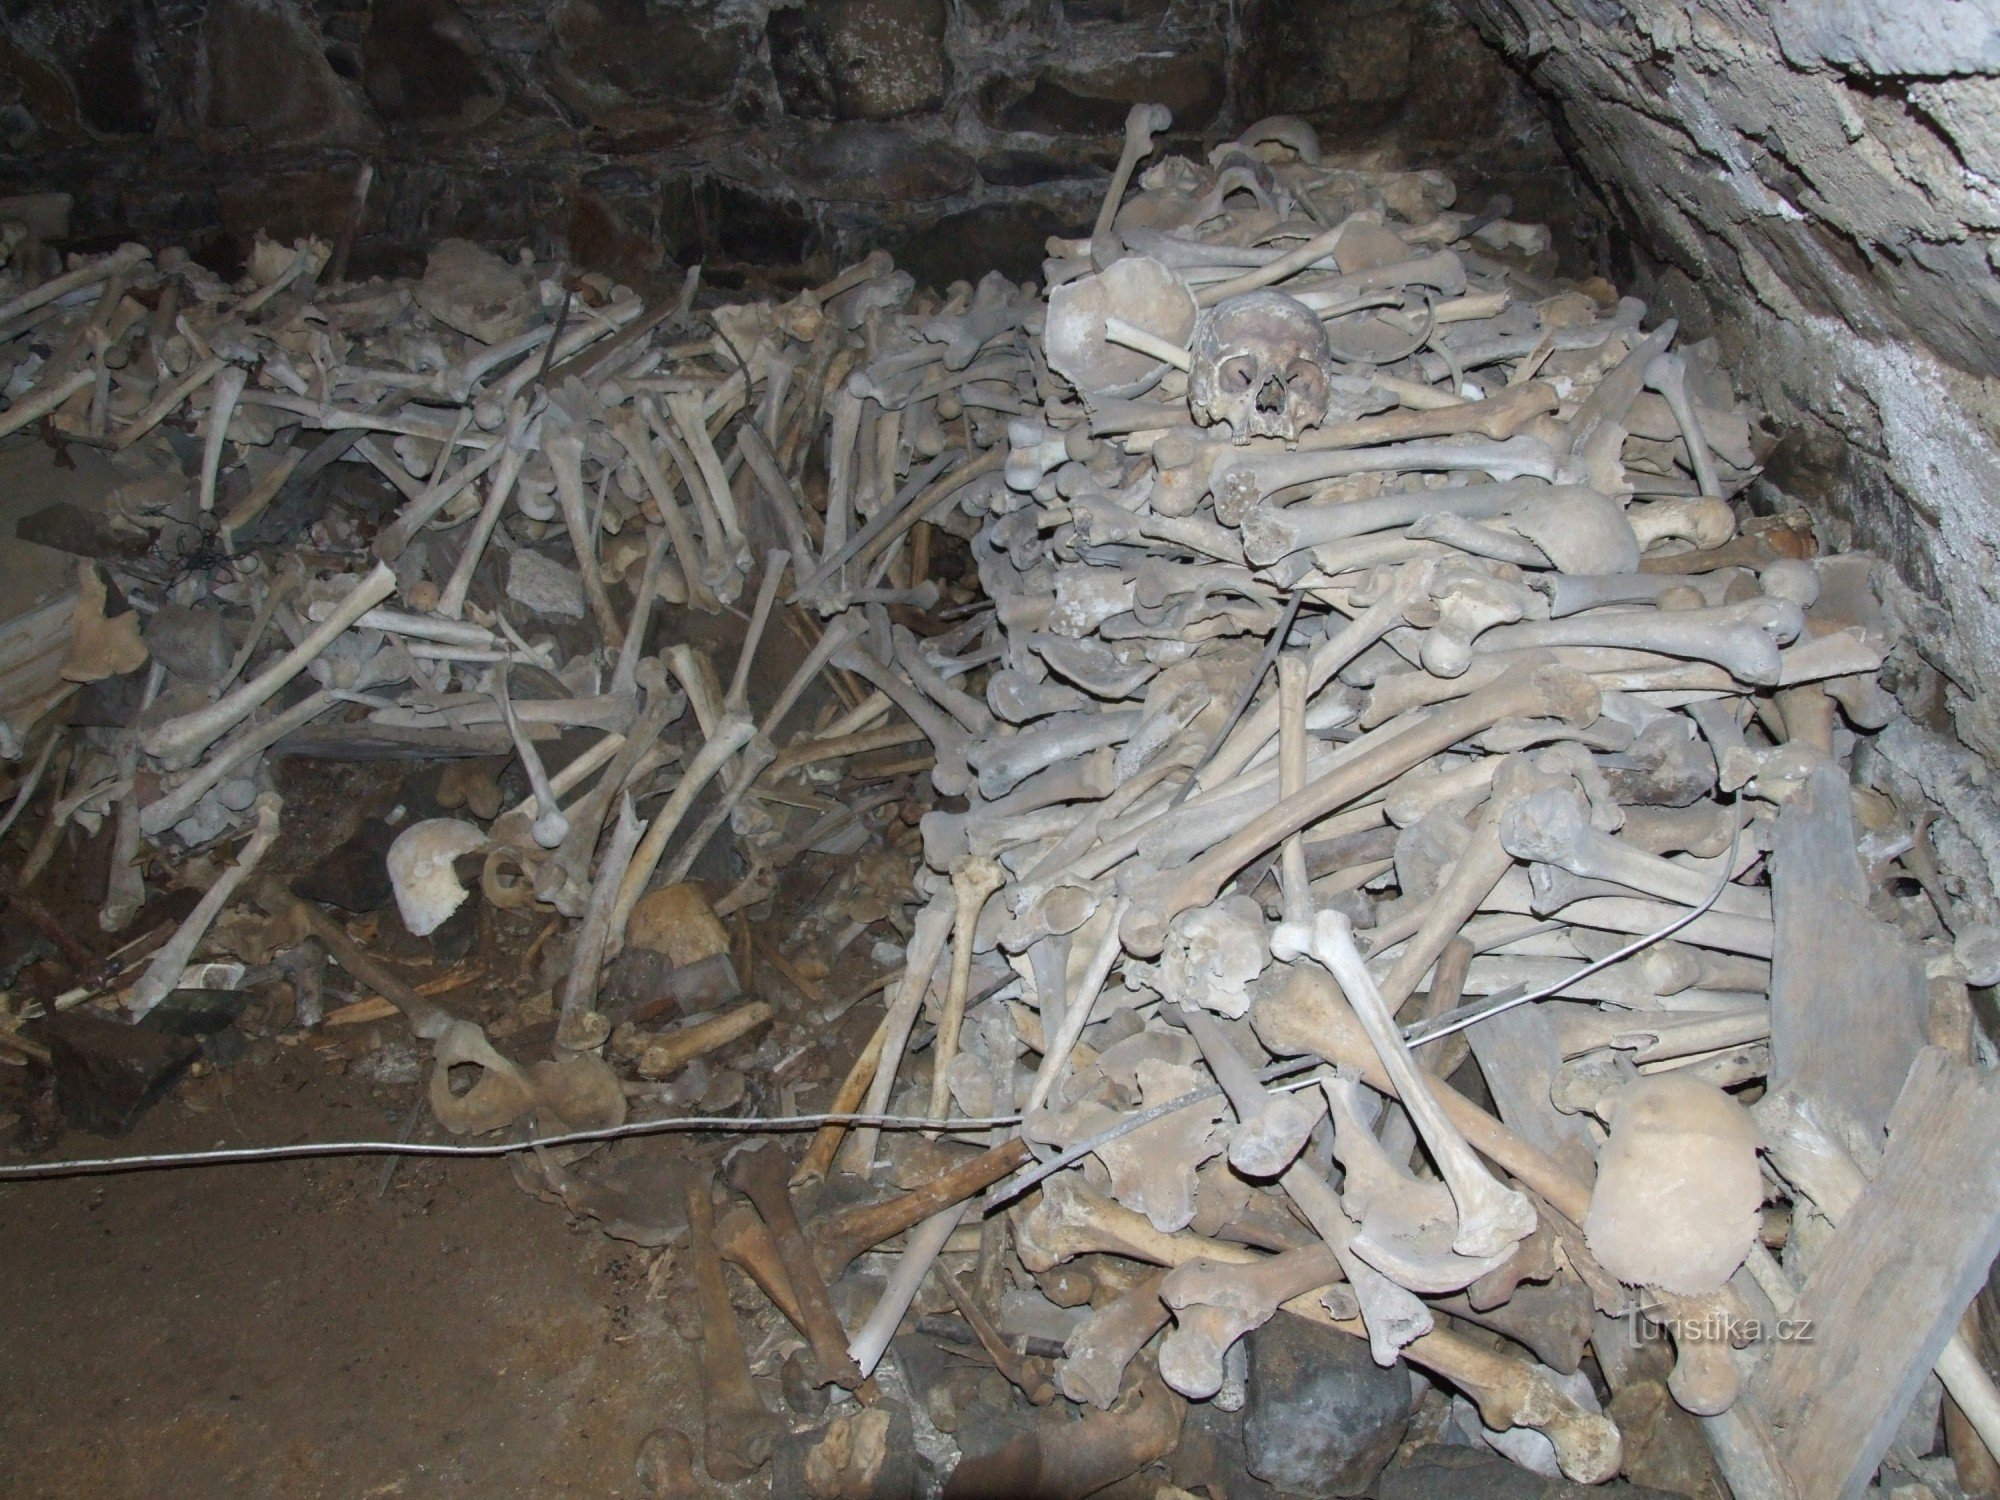 ossuary - der er spor af hug- og skudsår på knogler og kranier